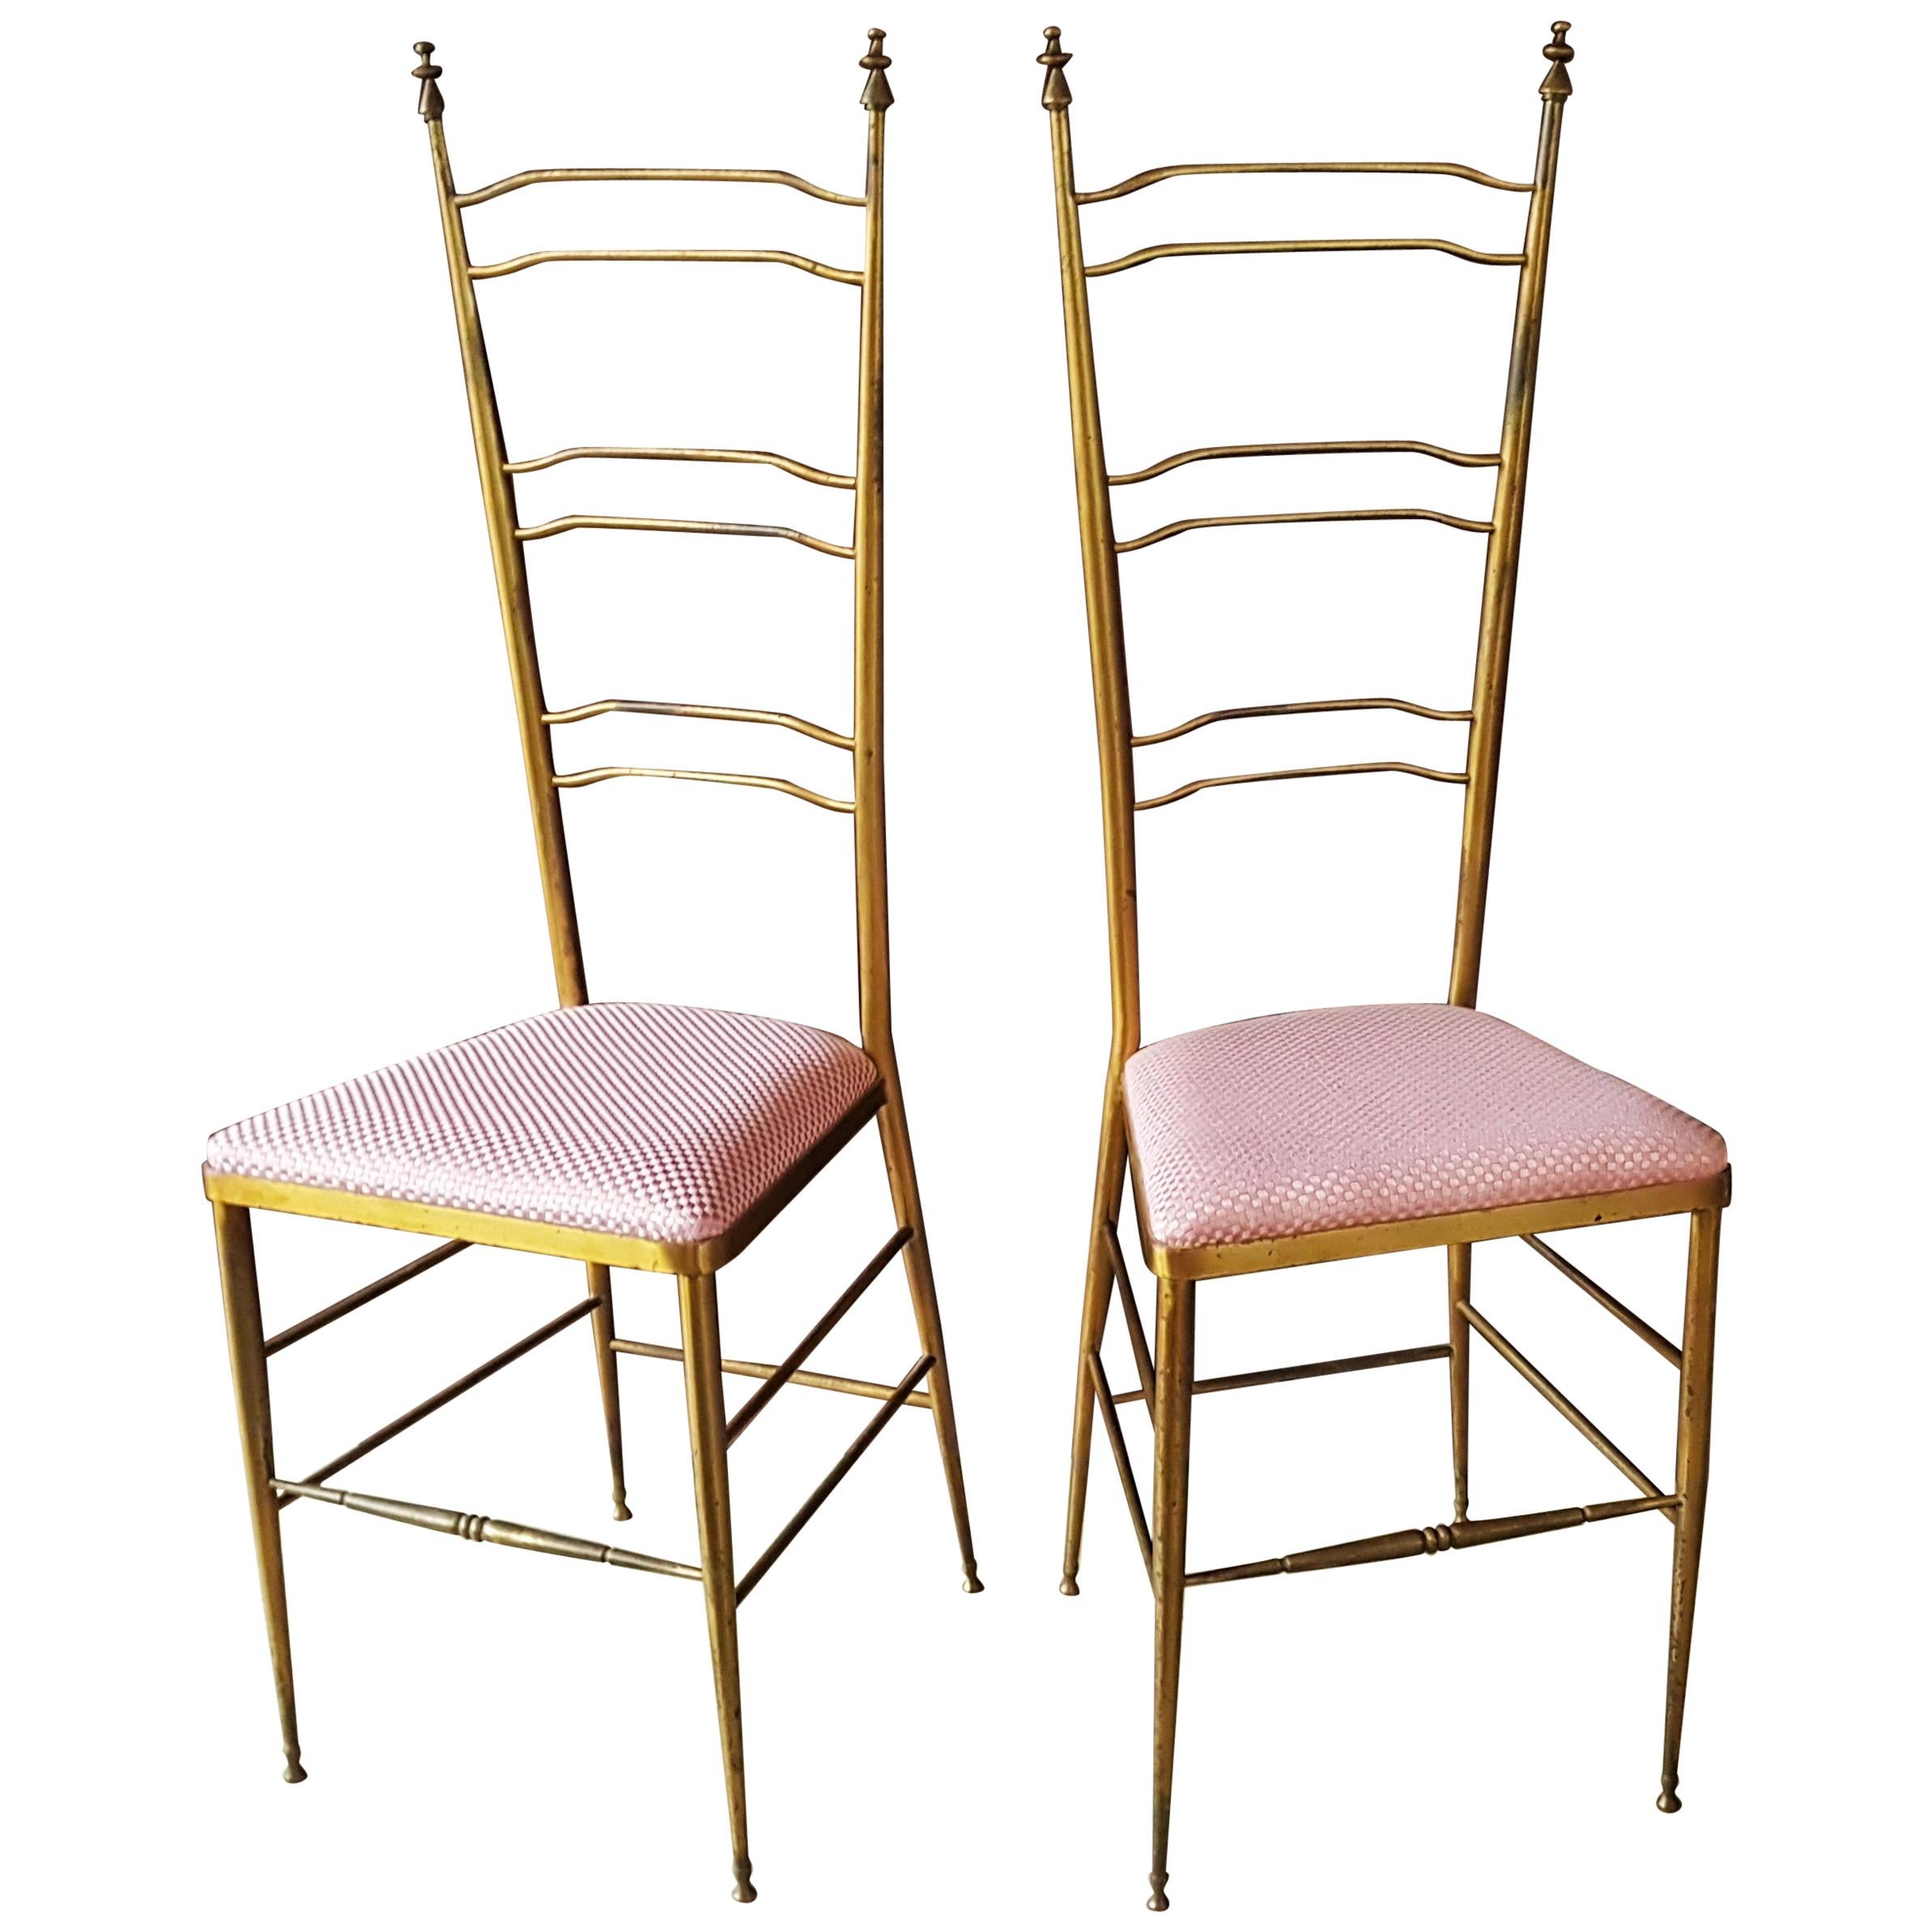 Midcentury Chiavari High Back Chairs, Italy, 1950s